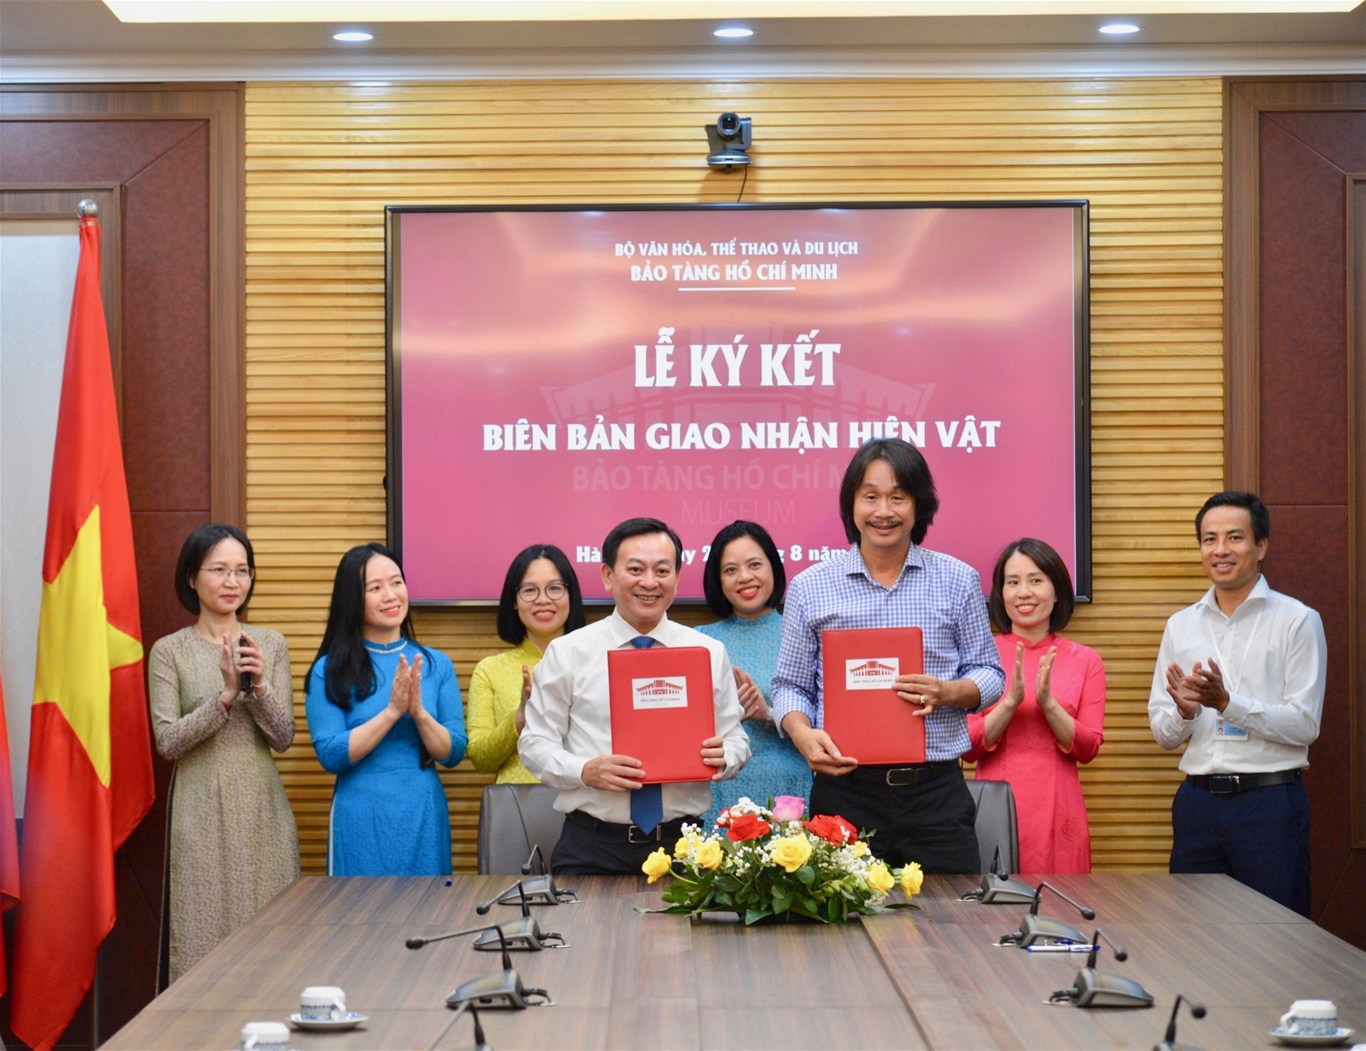 Bảo tàng Hồ Chí Minh tổ chức Lễ tiếp nhận các tác phẩm nghệ thuật về Chủ tịch Hồ Chí Minh của họa sĩ Văn Giáo - Ảnh 11.